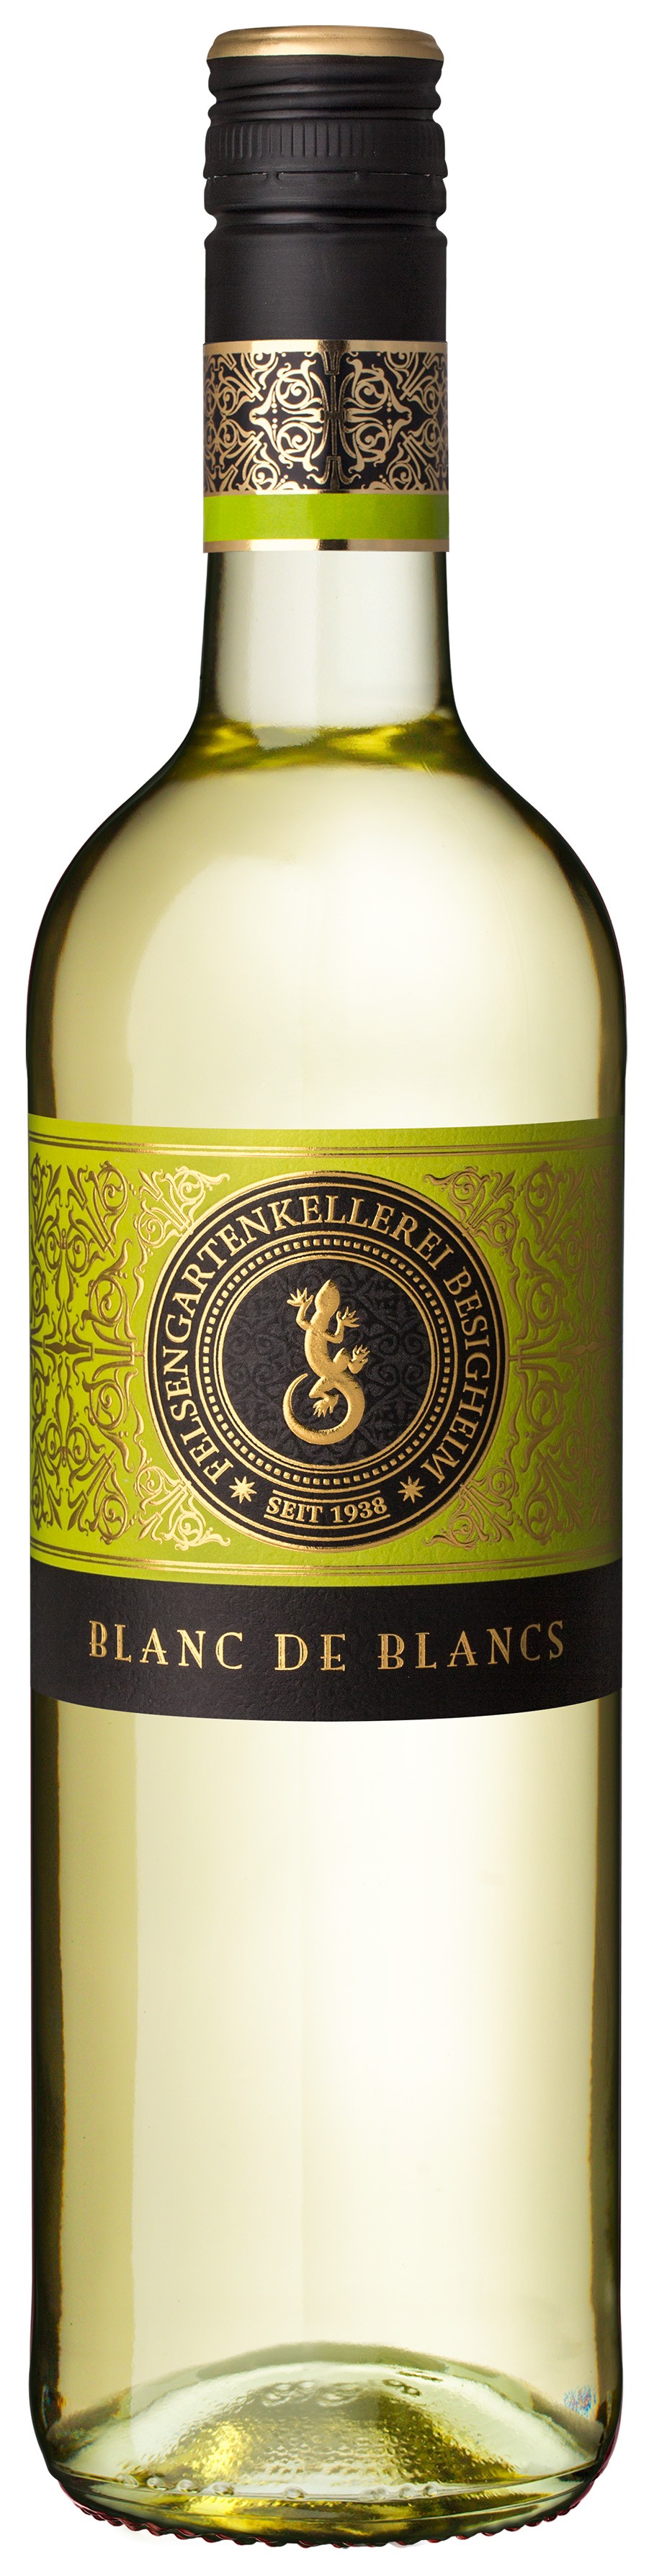 Edition Junge Cuvéeschmiede Blanc de Blancs Qualitätswein feinherb 